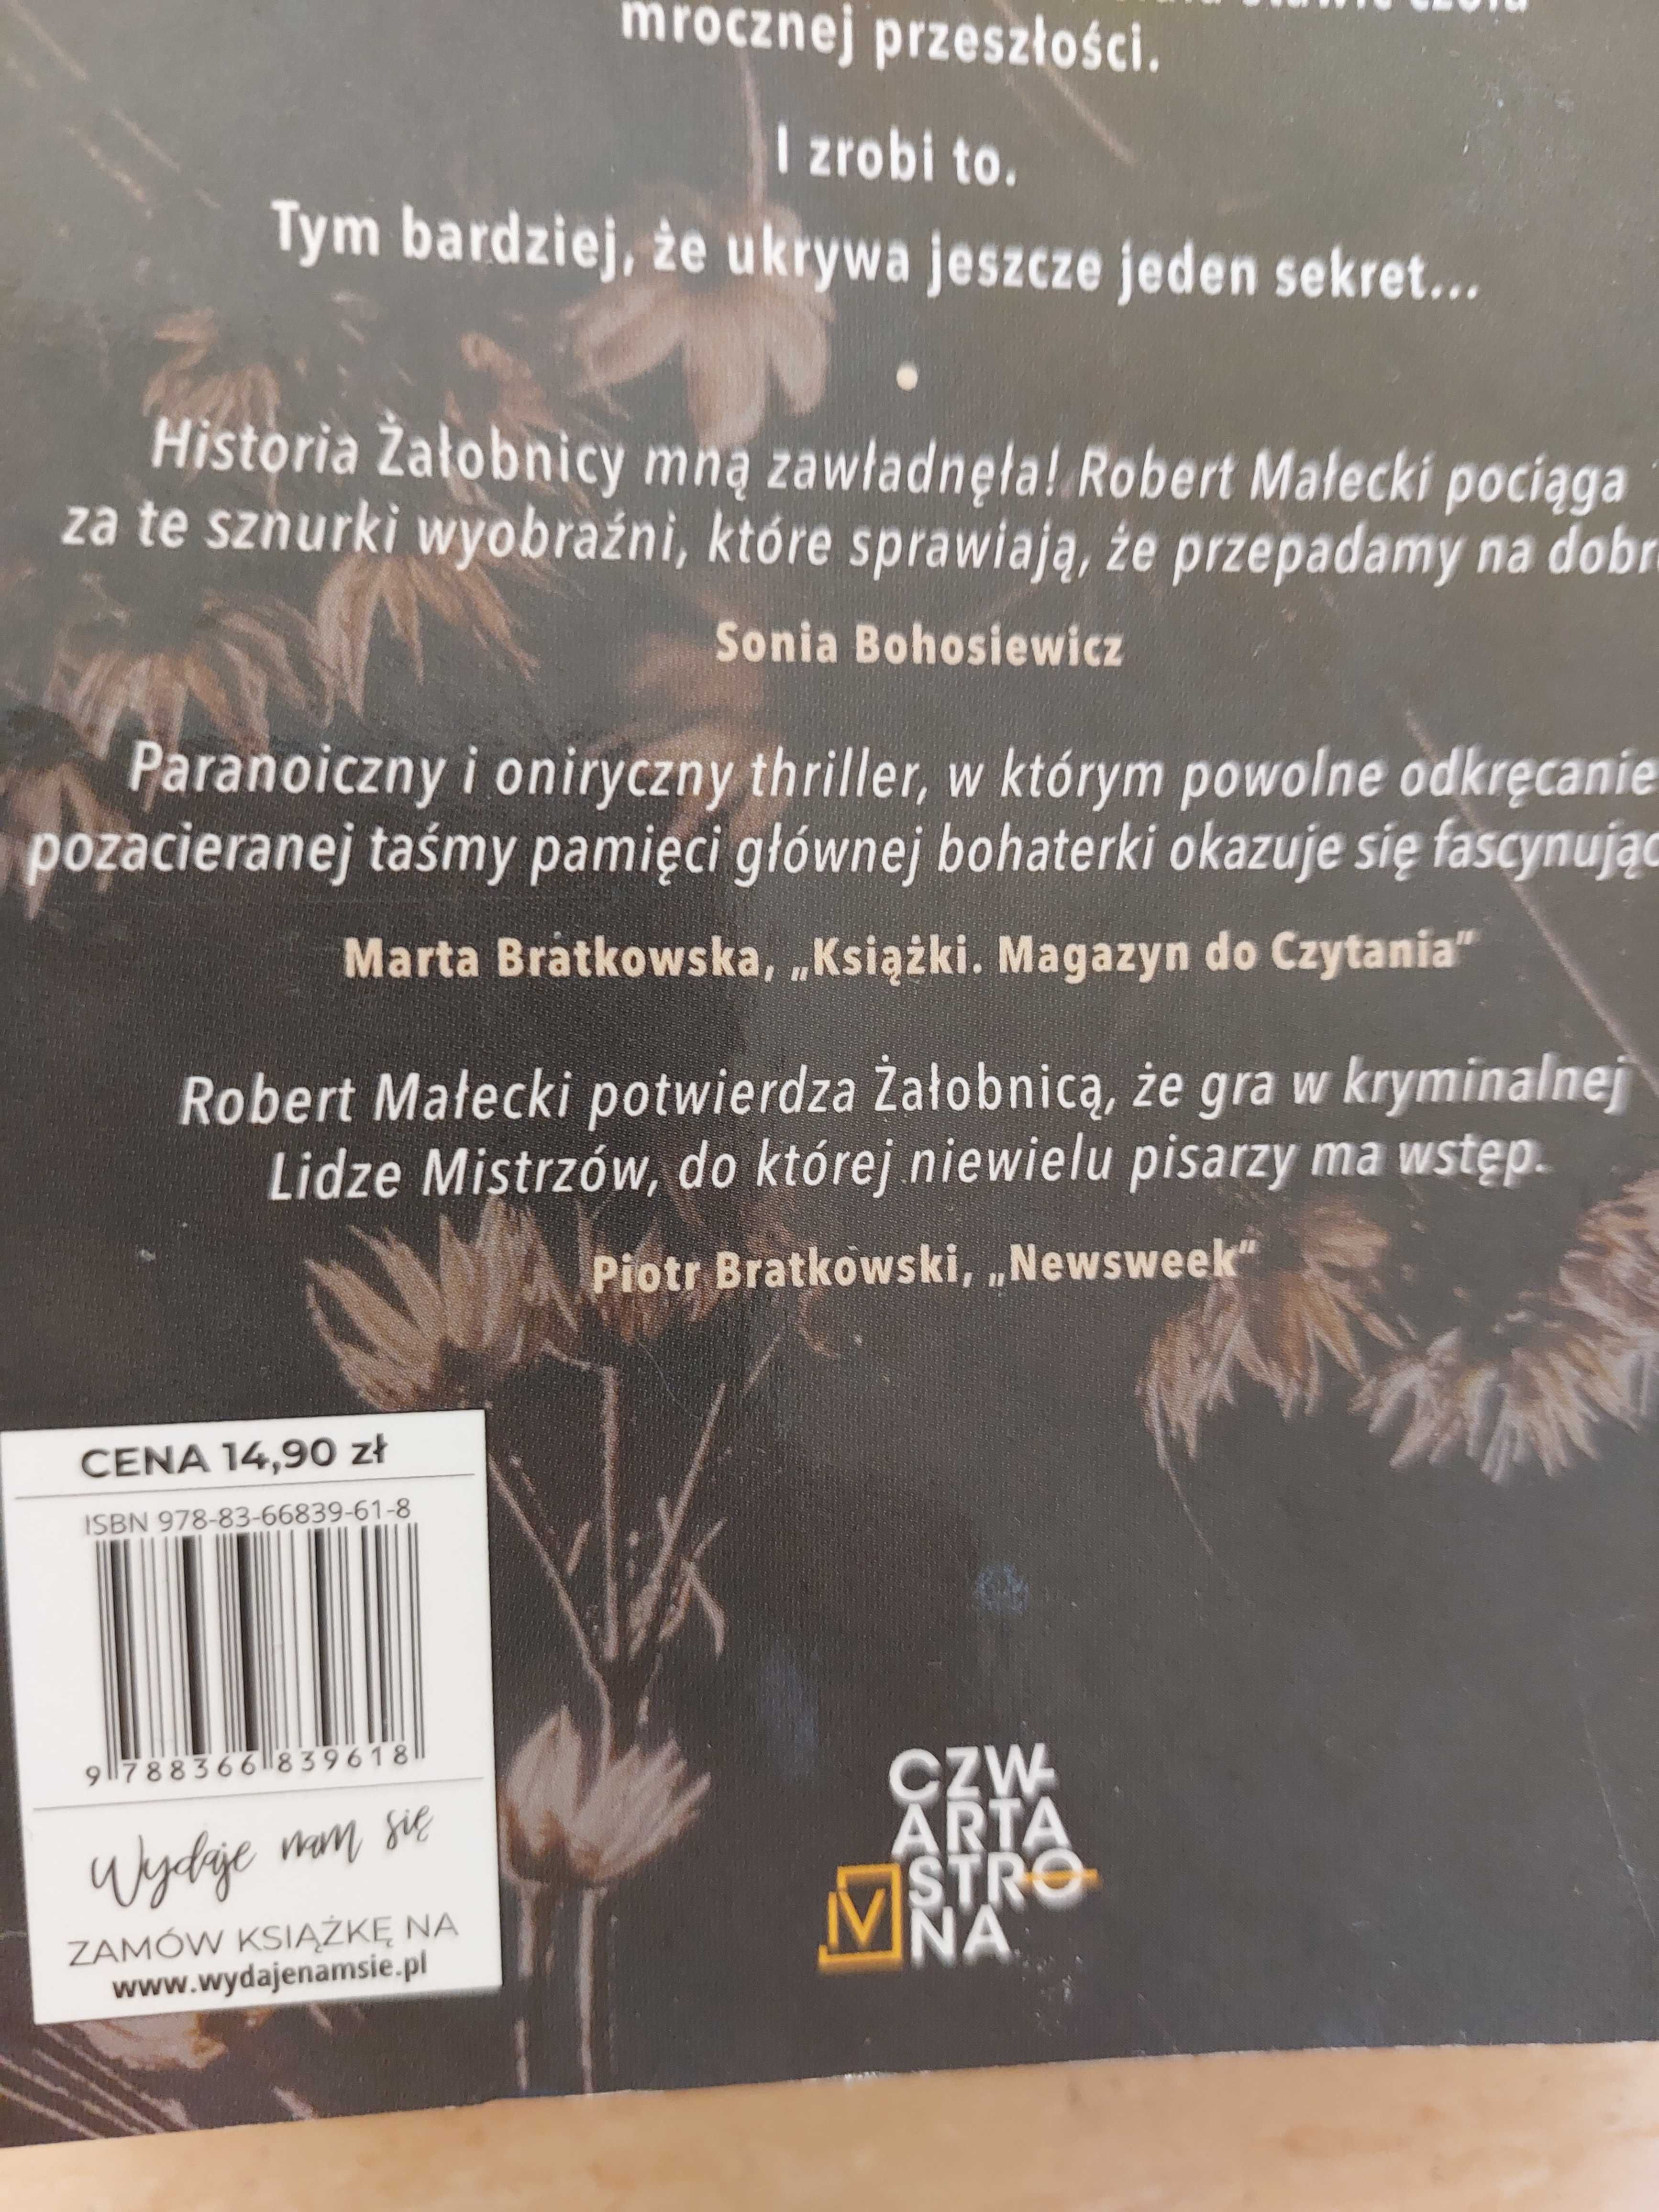 Książka "Żałobnica"